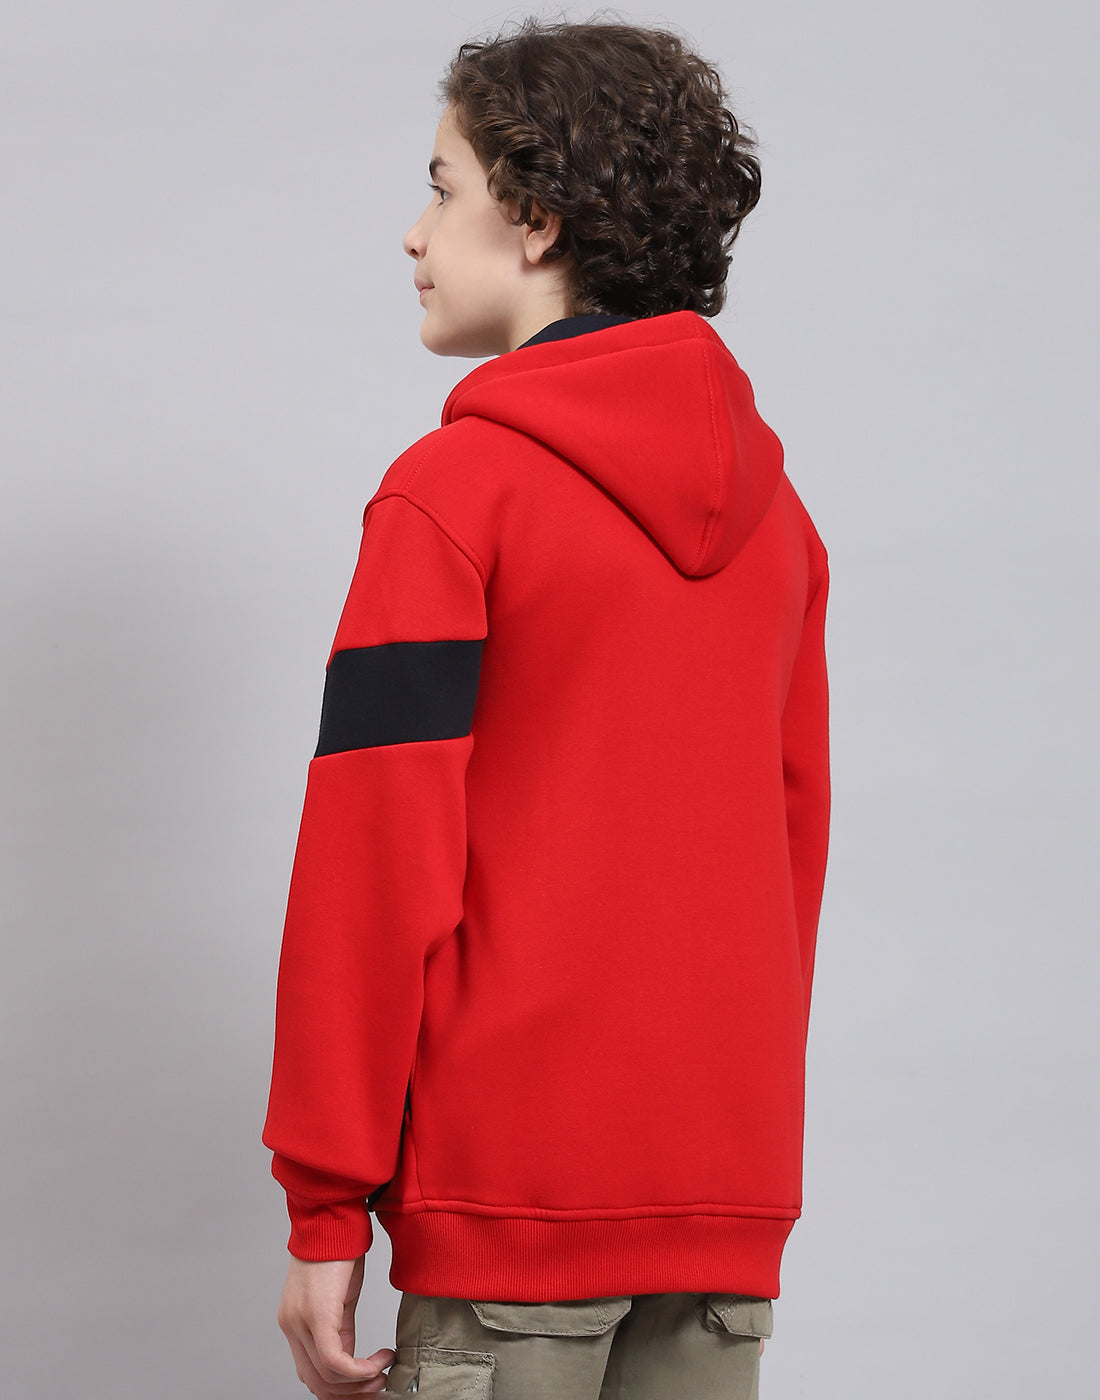 Boys Red Printed Hooded Full Sleeve Sweatshirt